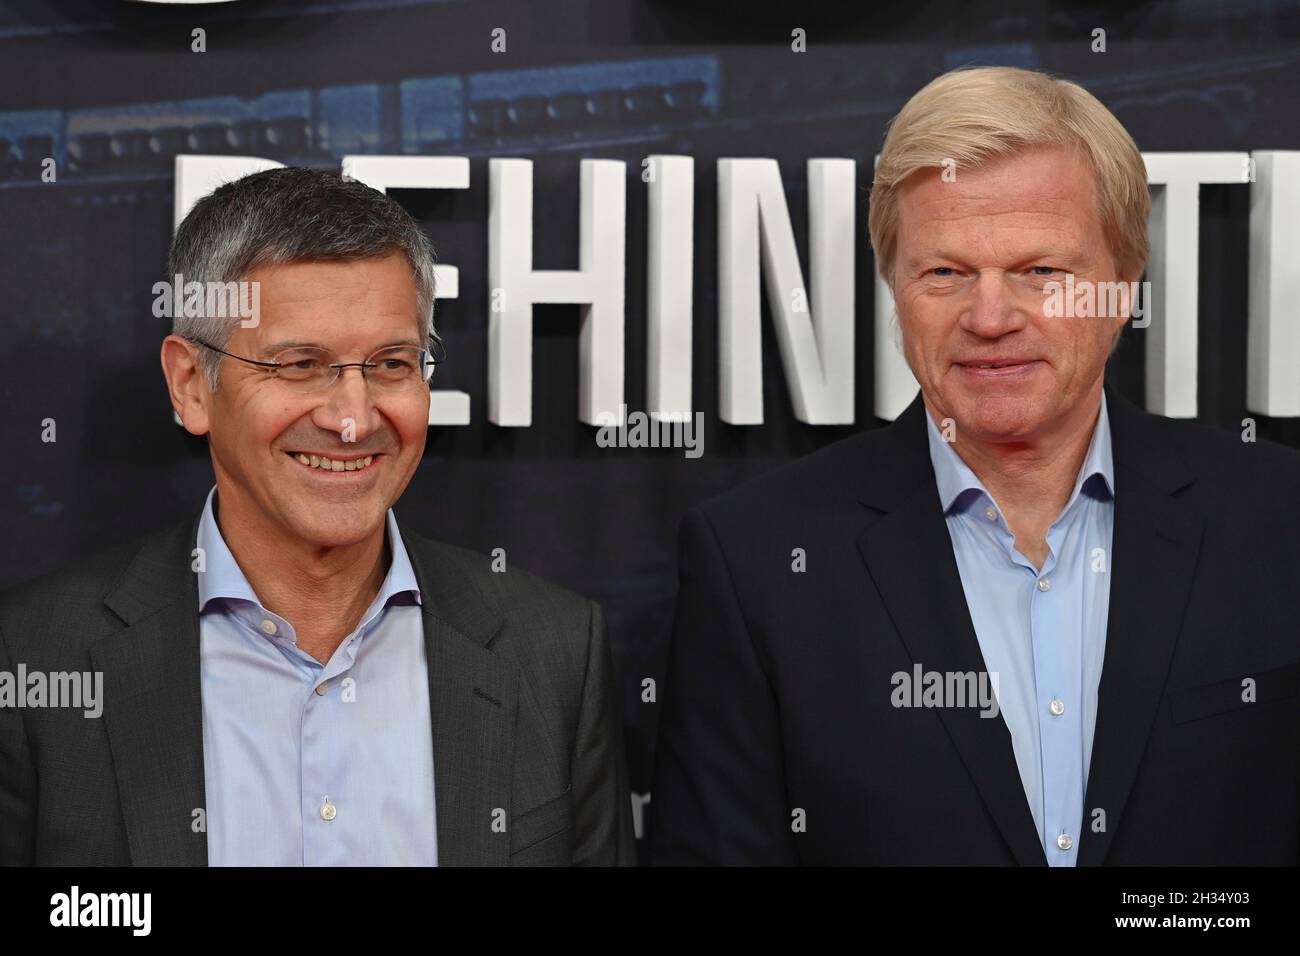 De gauche à droite : Herbert HAINER (Président FC Bayern Munich), Oliver KAHN (Directeur général FCB).Première partie pour l'Amazonie documentaire original FC BAYERN Ð DERRIÈRE LA LÉGENDE le 25 octobre 2021 à l'Arri Kino à Munich, tapis rouge. Banque D'Images